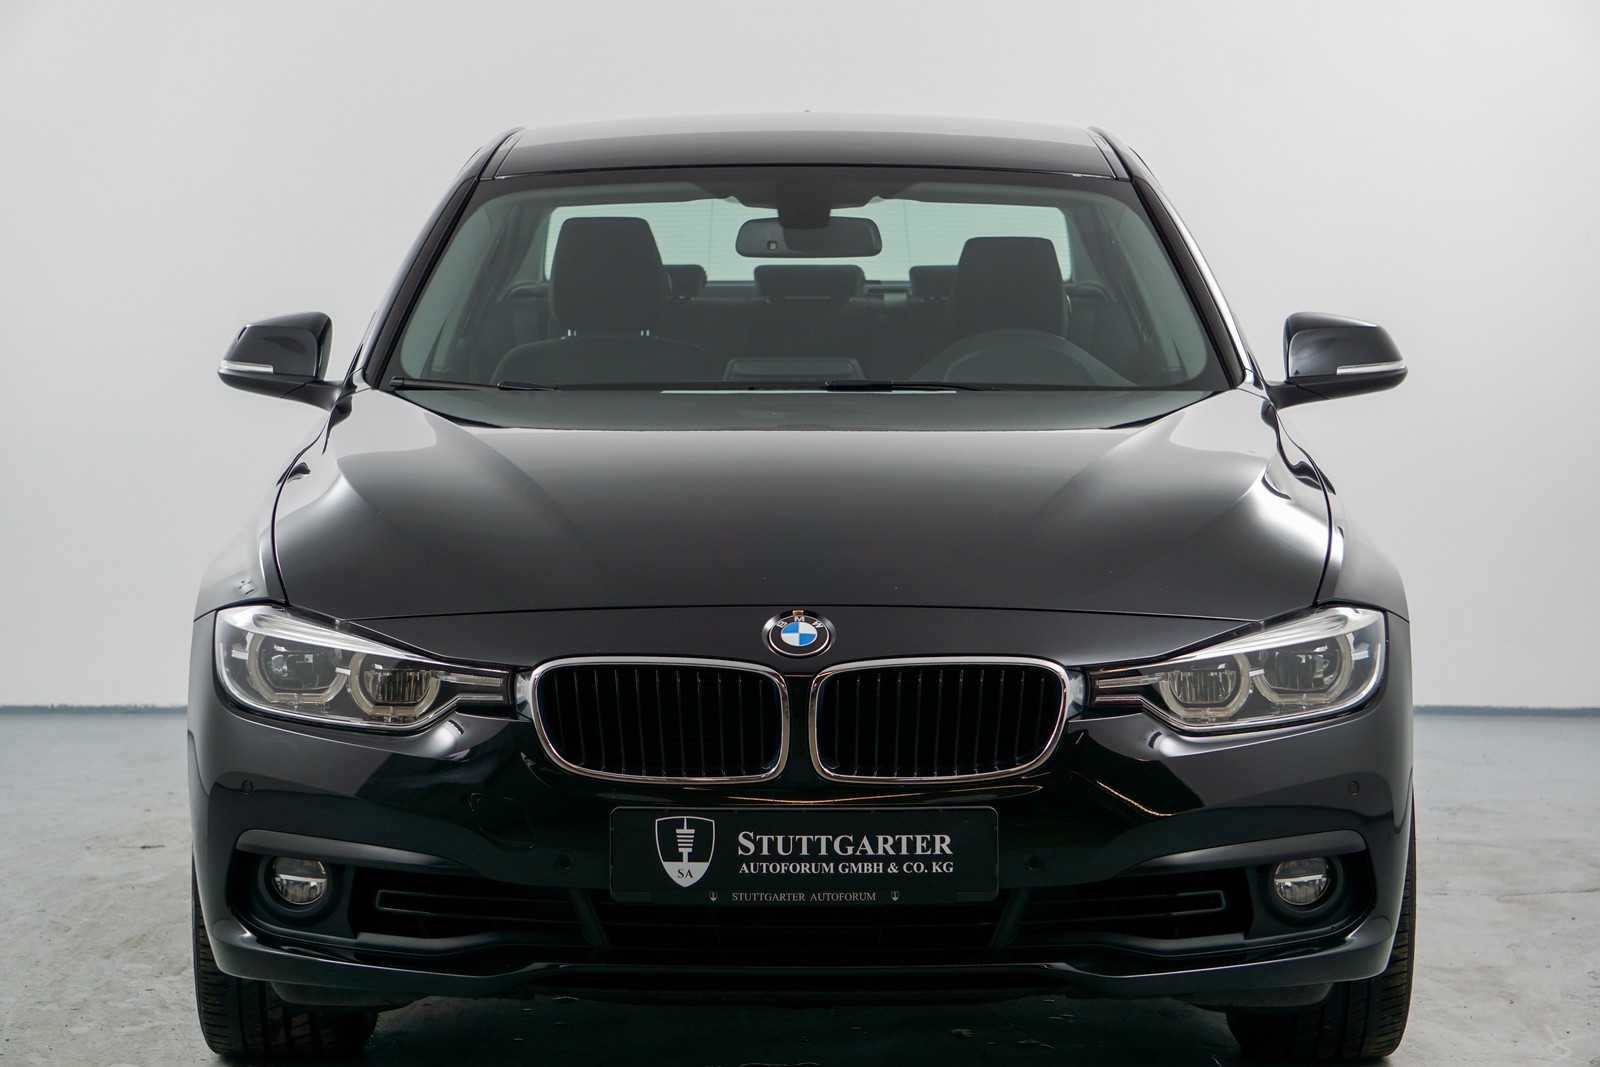 BMW 318 i gebraucht kaufen in Furtwangen Preis 11800 eur - Int.Nr